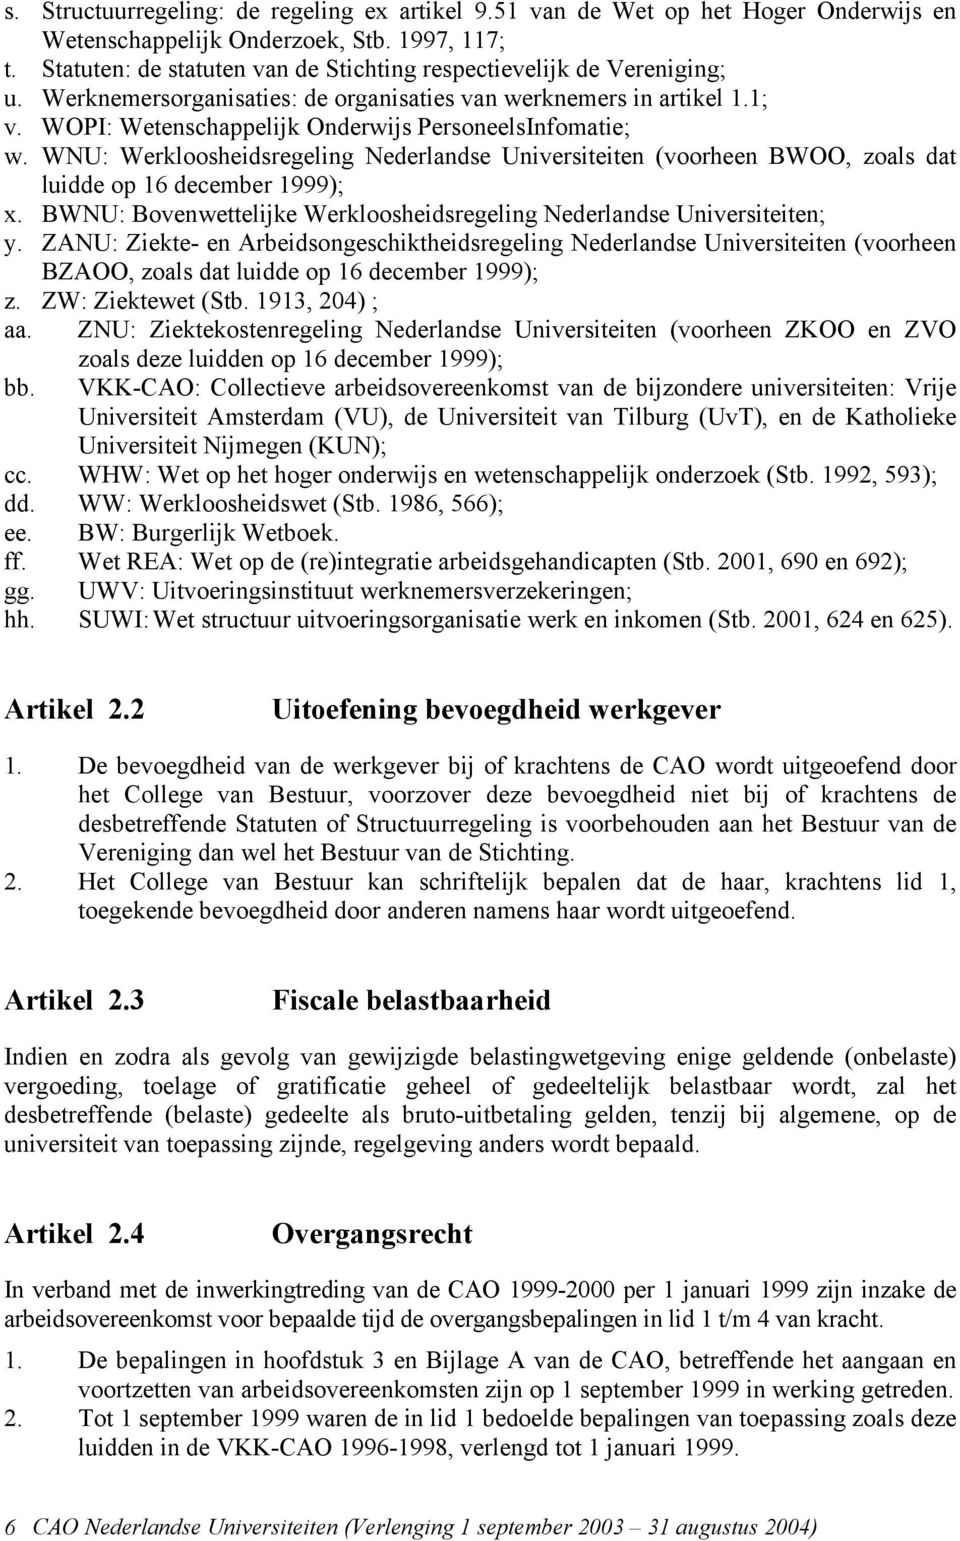 WOPI: Wetenschappelijk Onderwijs PersoneelsInfomatie; w. WNU: Werkloosheidsregeling Nederlandse Universiteiten (voorheen BWOO, zoals dat luidde op 16 december 1999); x.